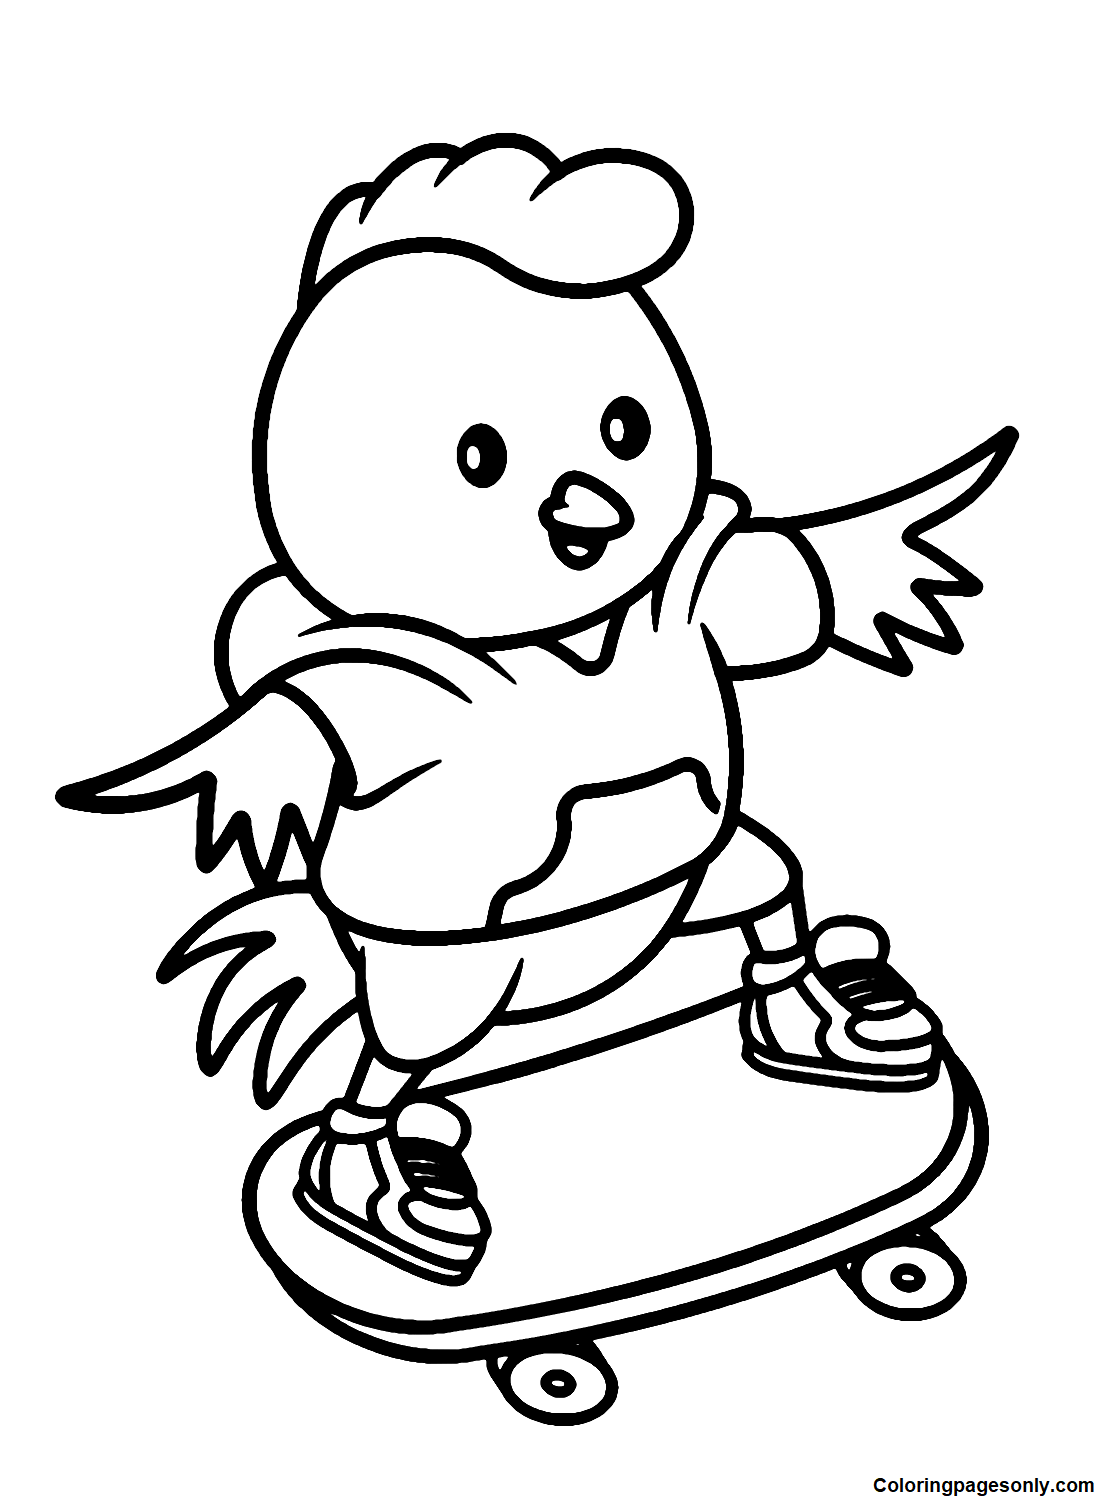 دجاج يلعب كارتون لوح التزلج من تشيك